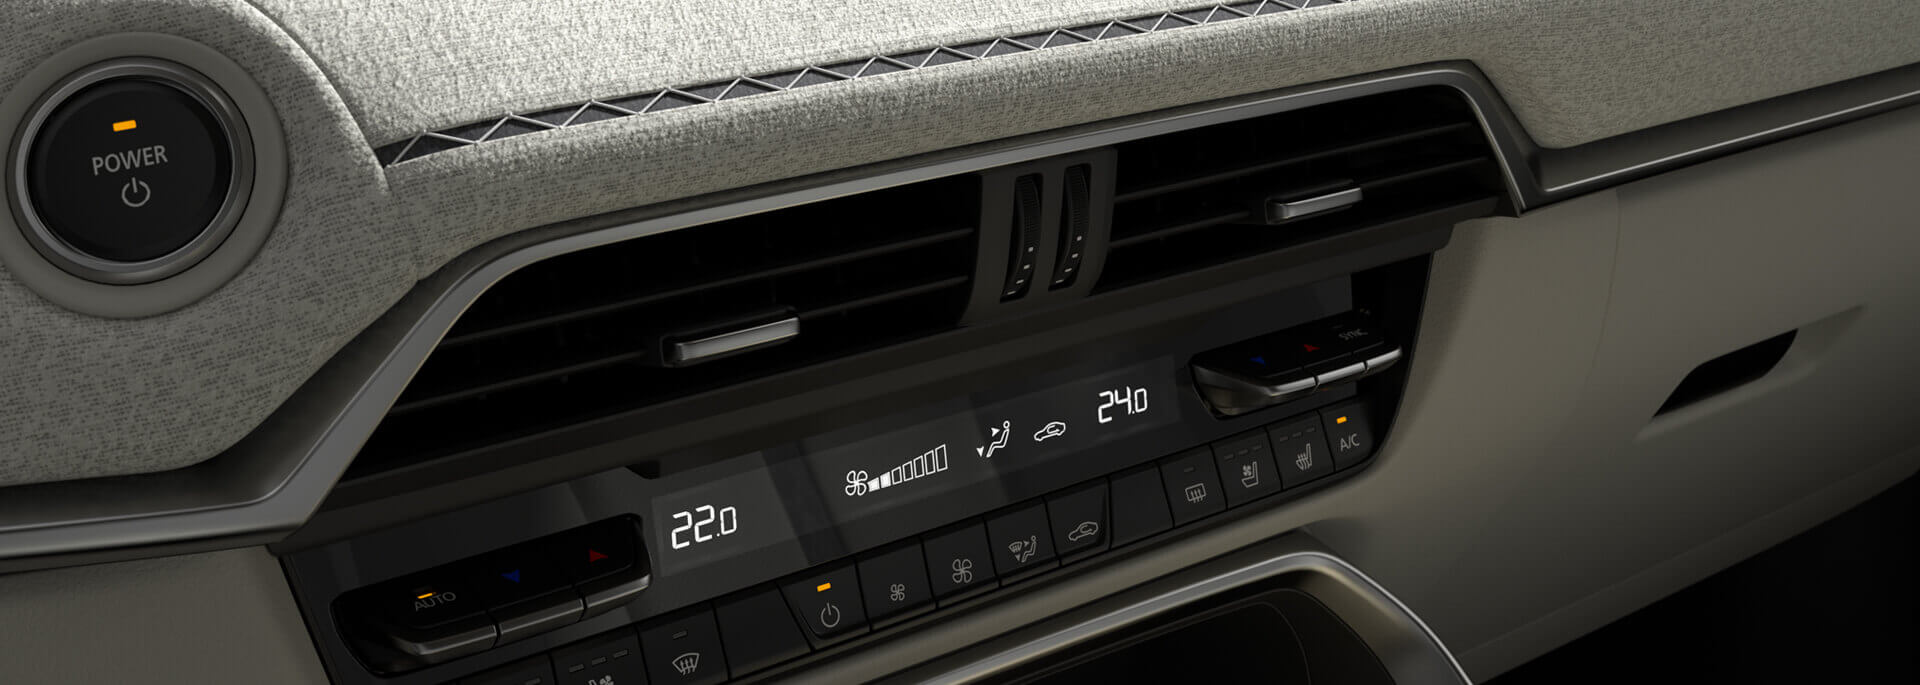 Insidan i helt nya Mazda CX-60 med kvalitetsmaterial och traditionella japanska textilier.